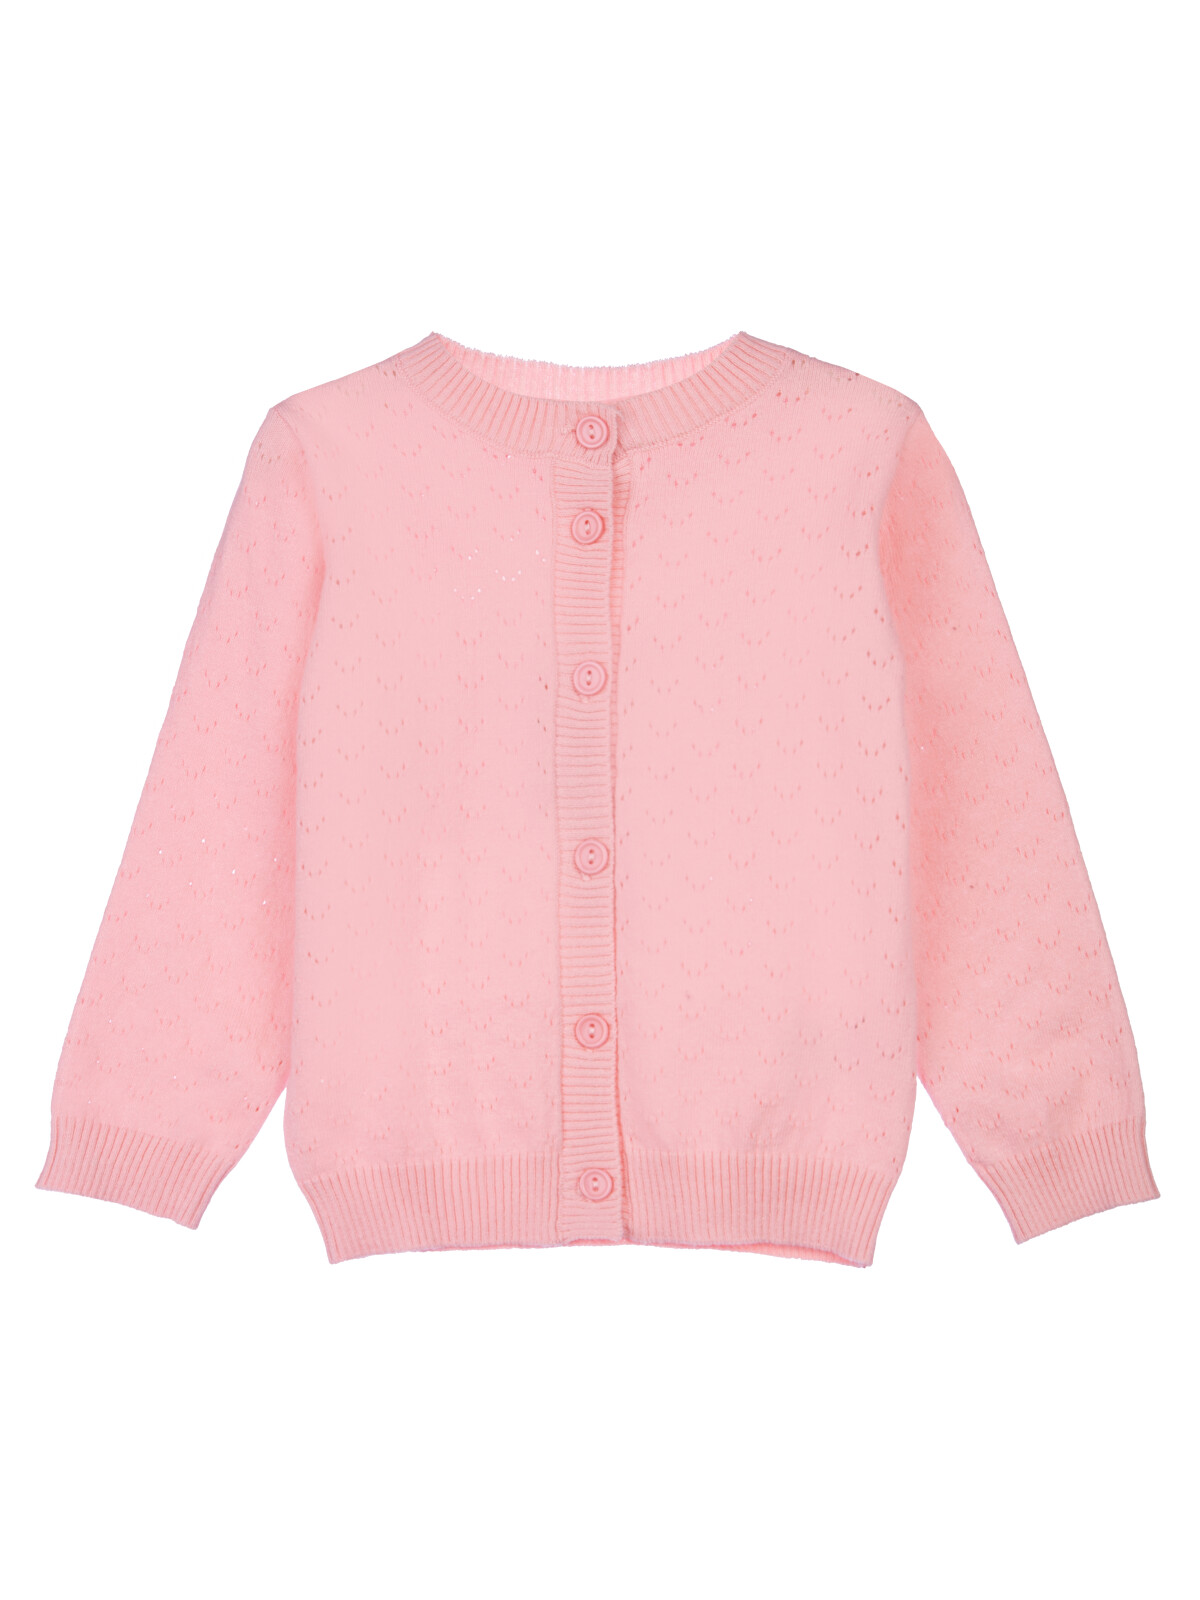 Кардиган детский PlayToday 12329076, цвет светло-розовый, размер 92